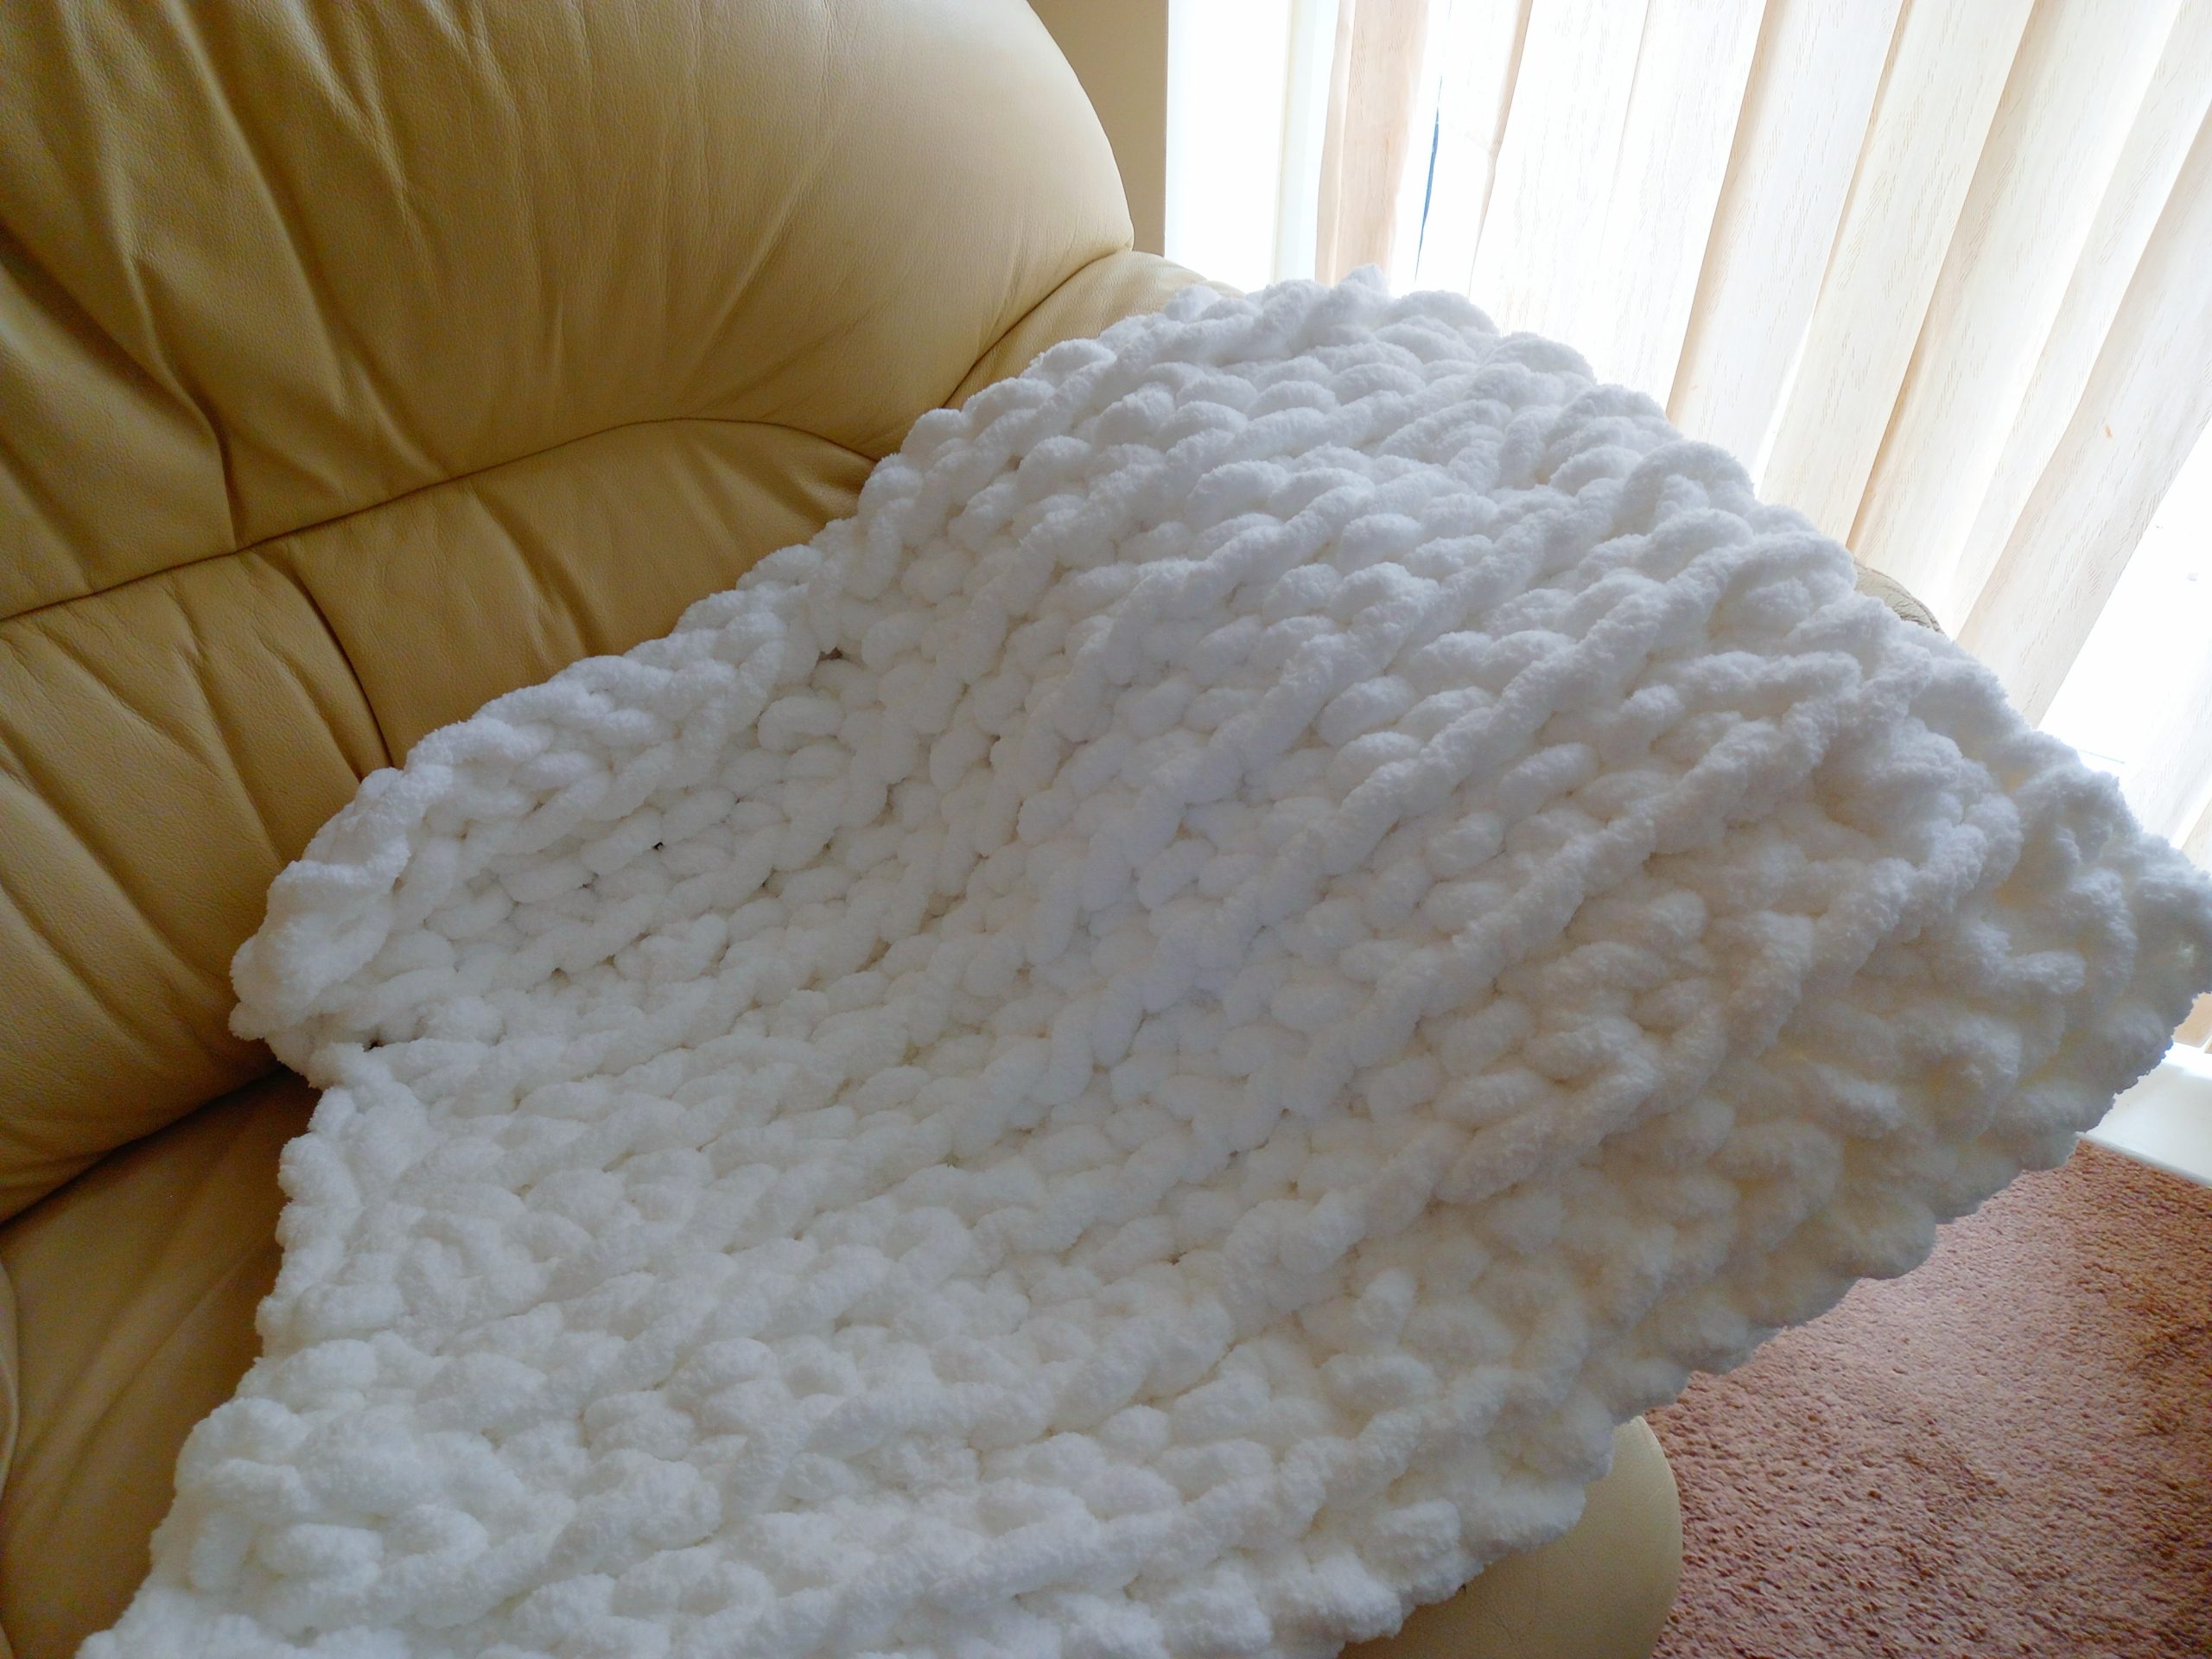 Chunky Crochet Blanket for Beginners